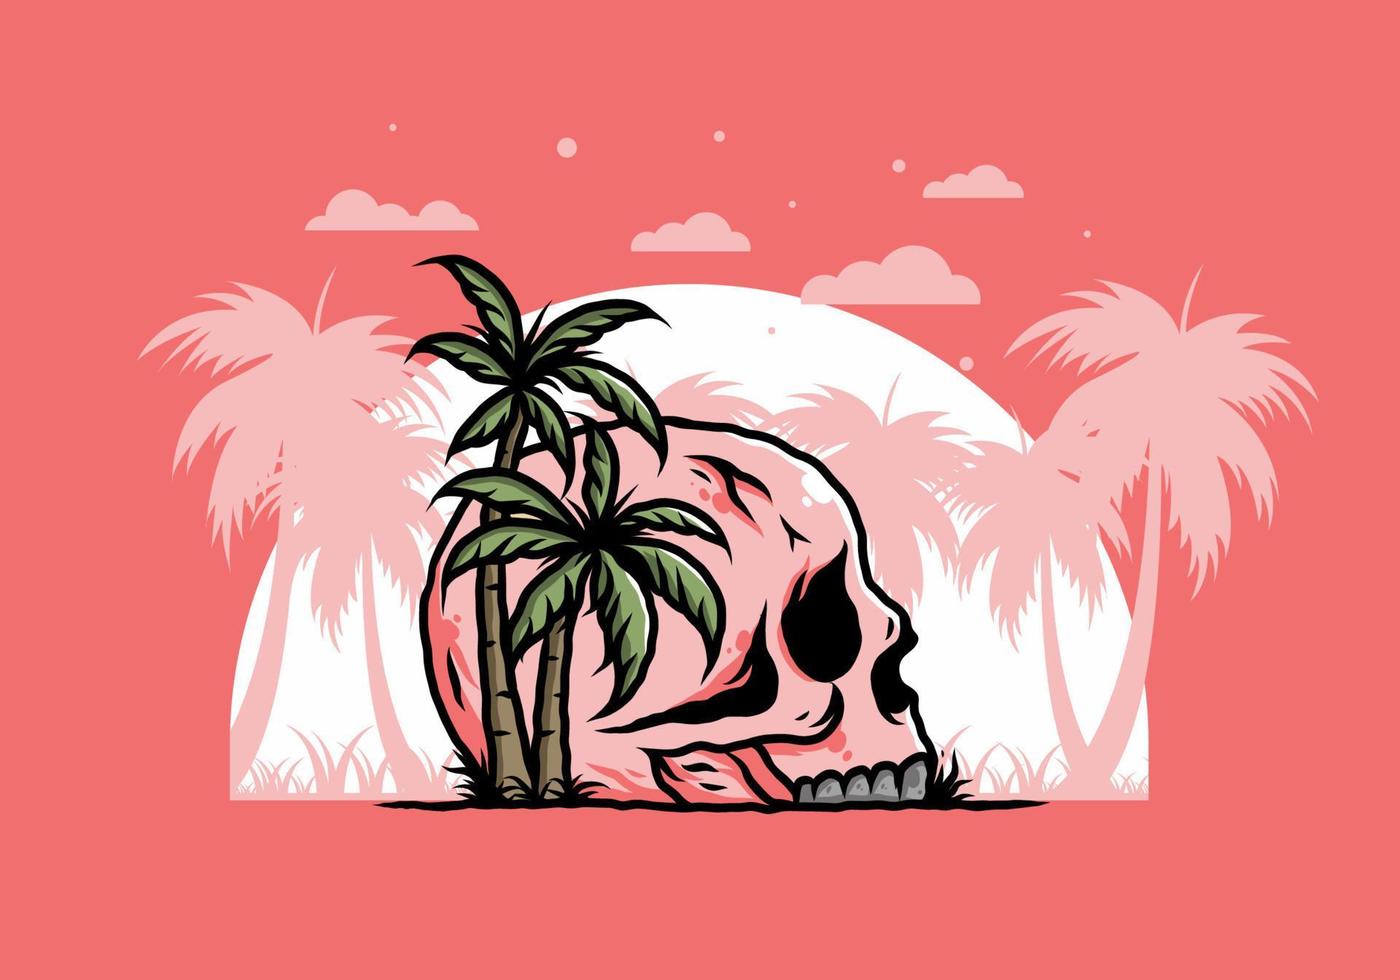 Skull head under coconut trees illustration vector